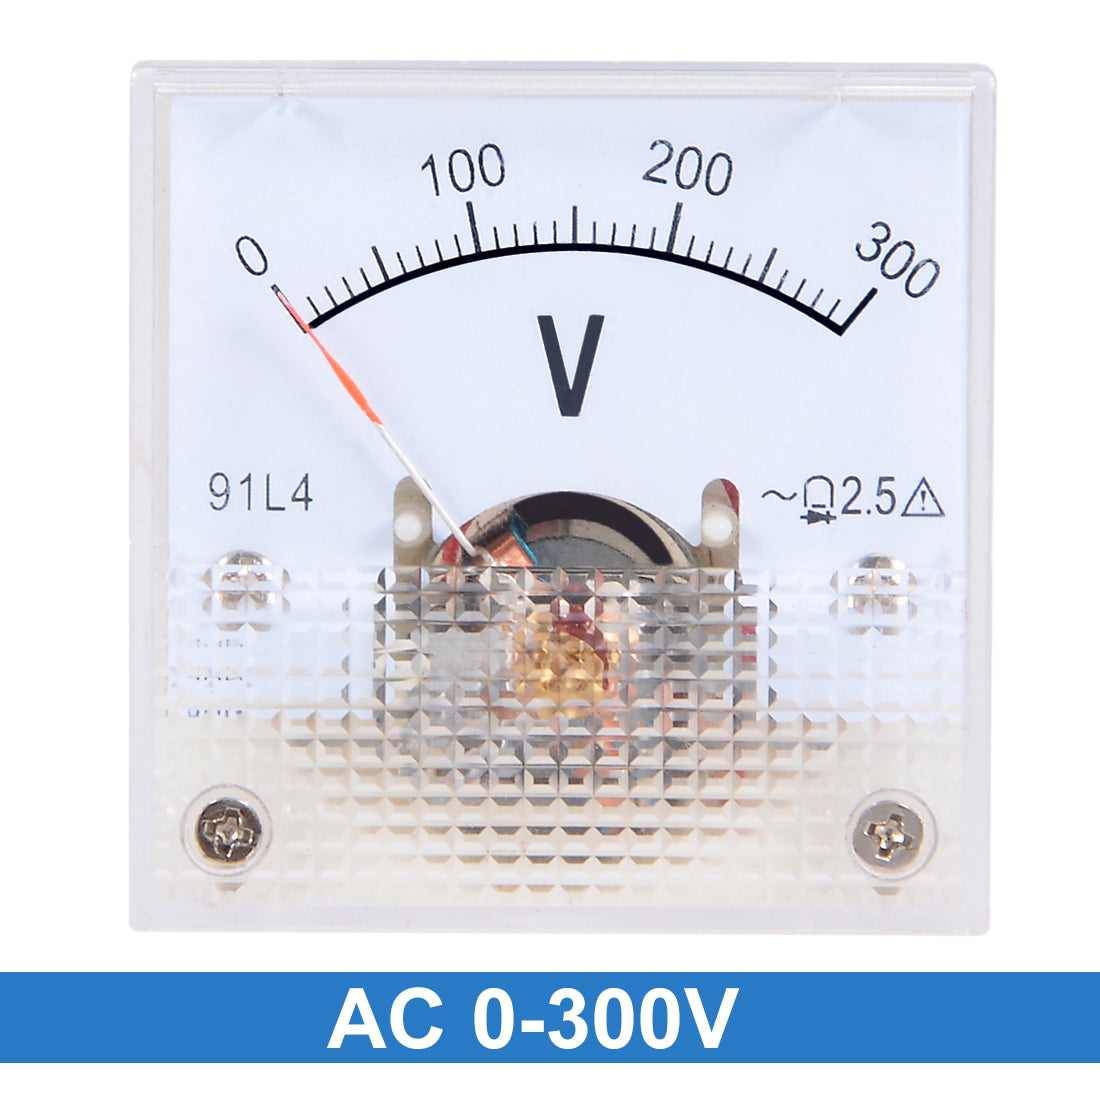 uxcell Uxcell AC 0-300V Analog Panel Voltage Gauge Volt Meter 91C4 2.5% Error Margin